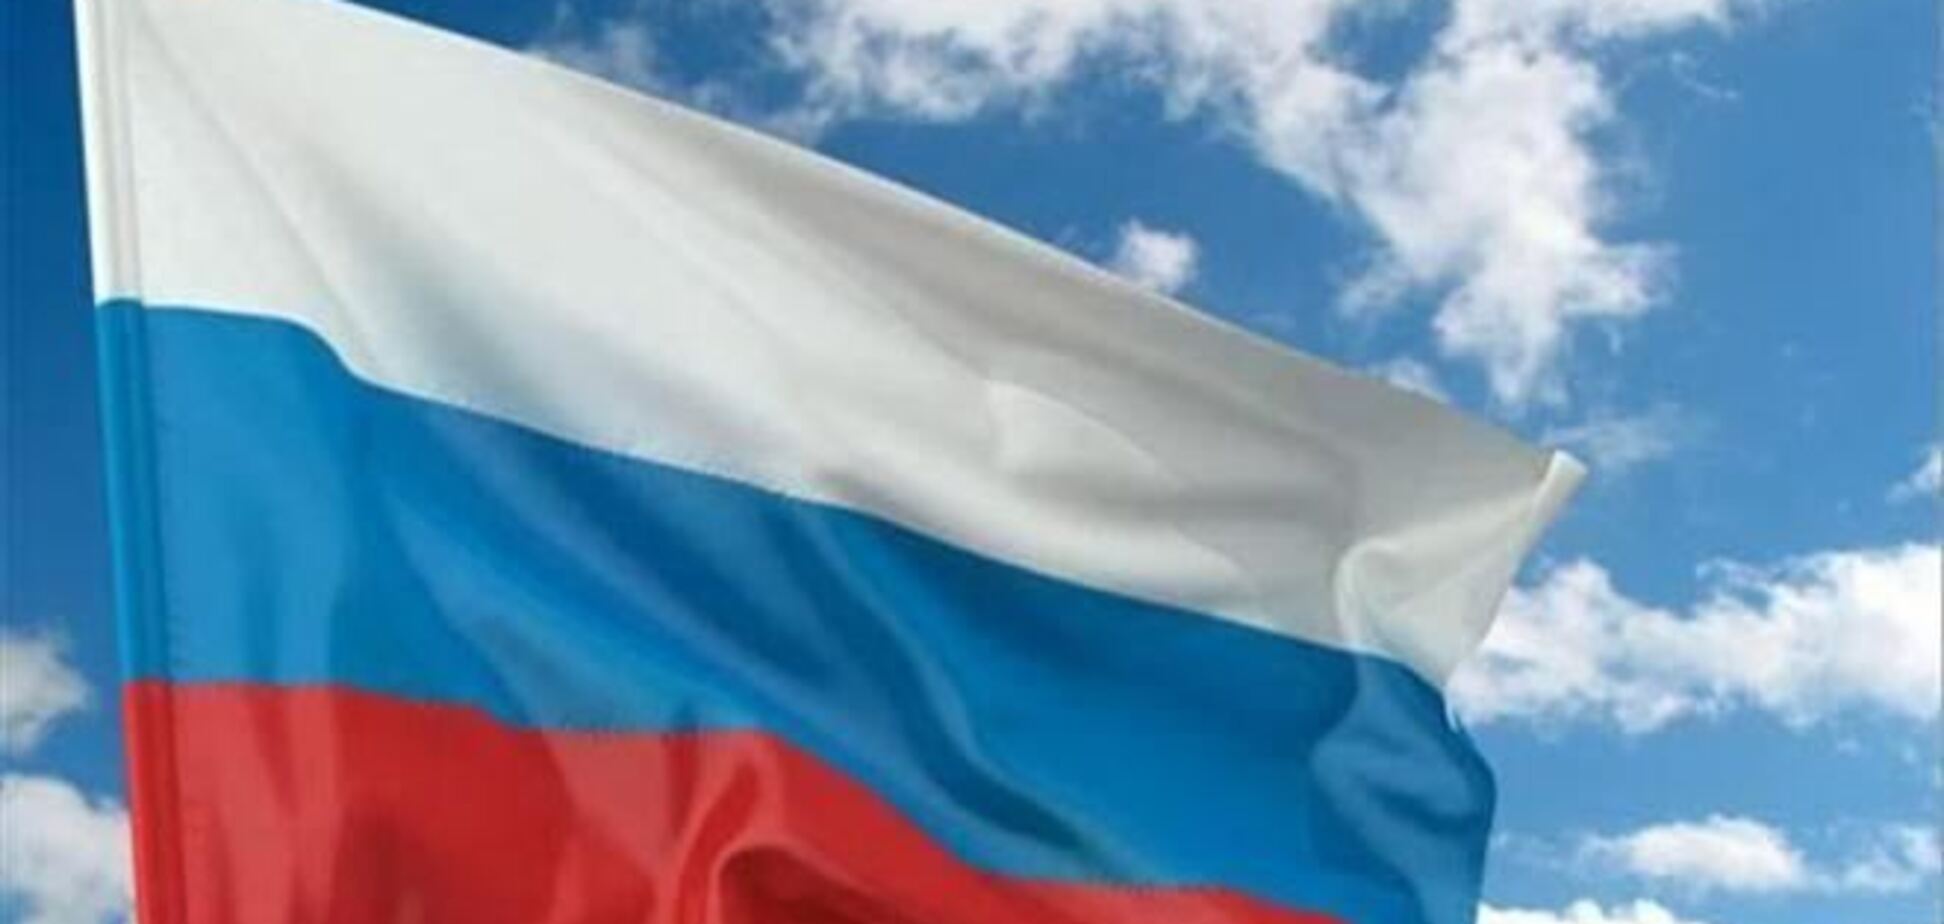 Дело дончанина, вывесившего российский флаг на горсовете, направили в суд